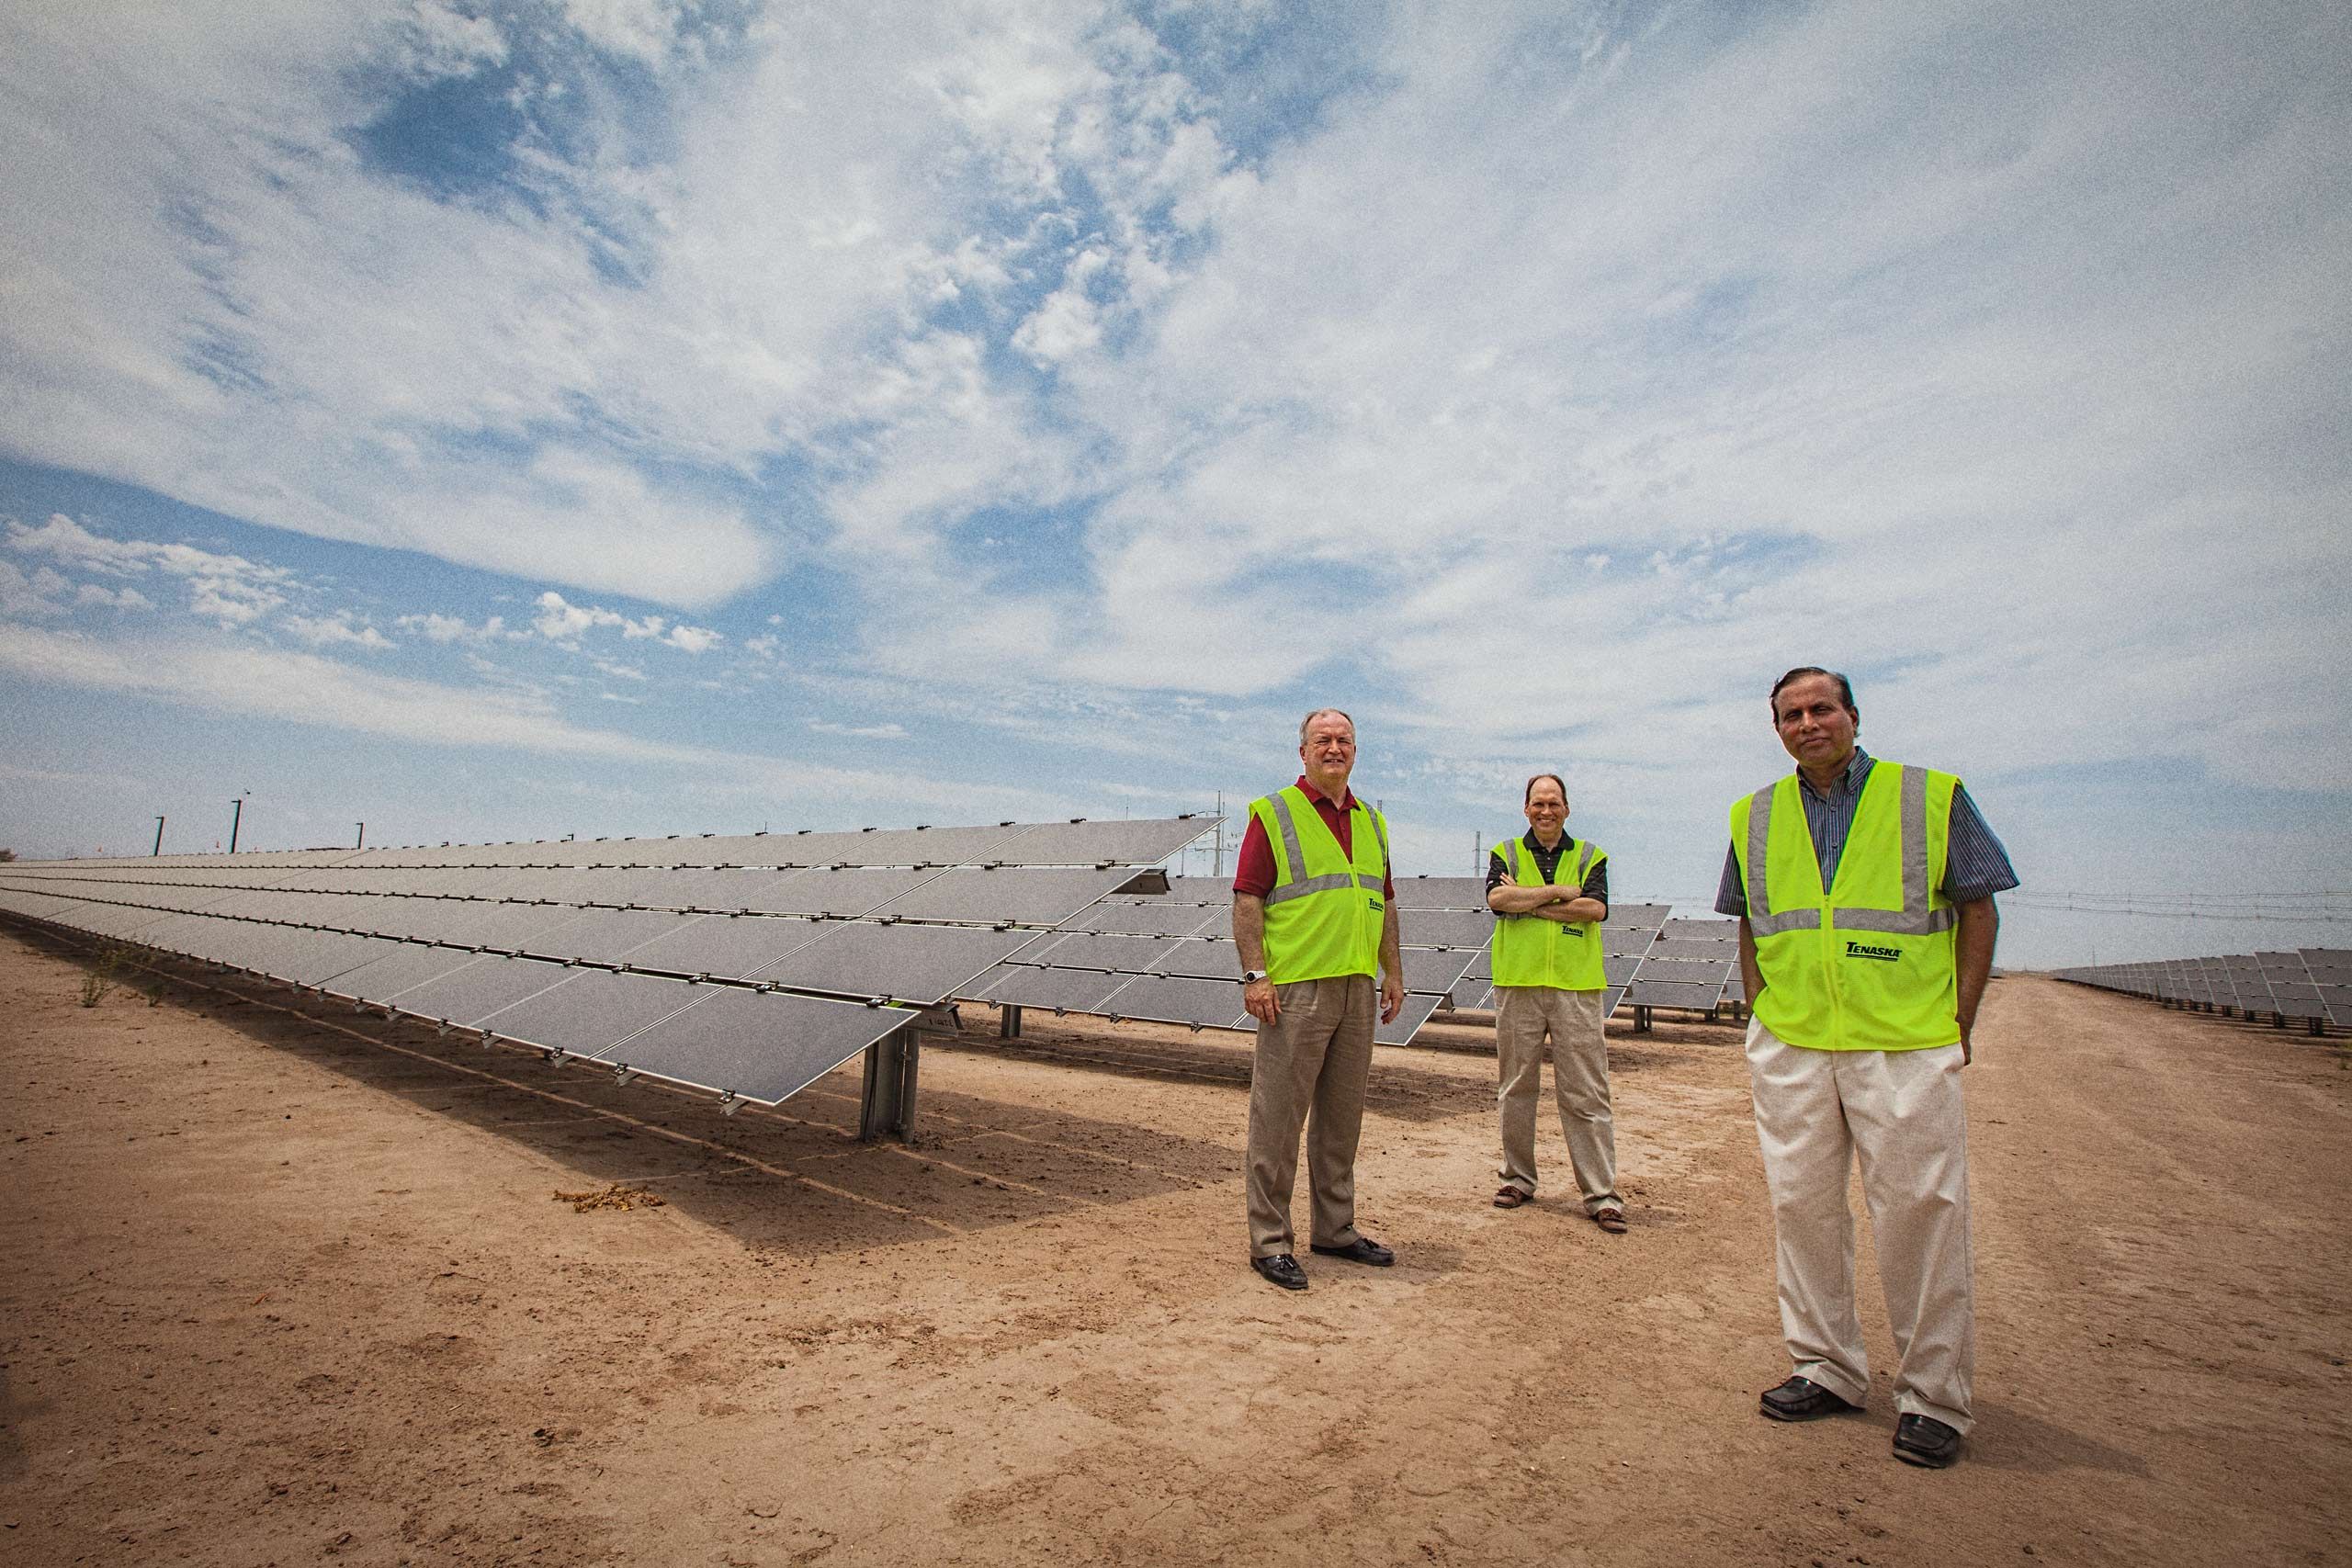 Executive Group Portrait at a Solar Farm